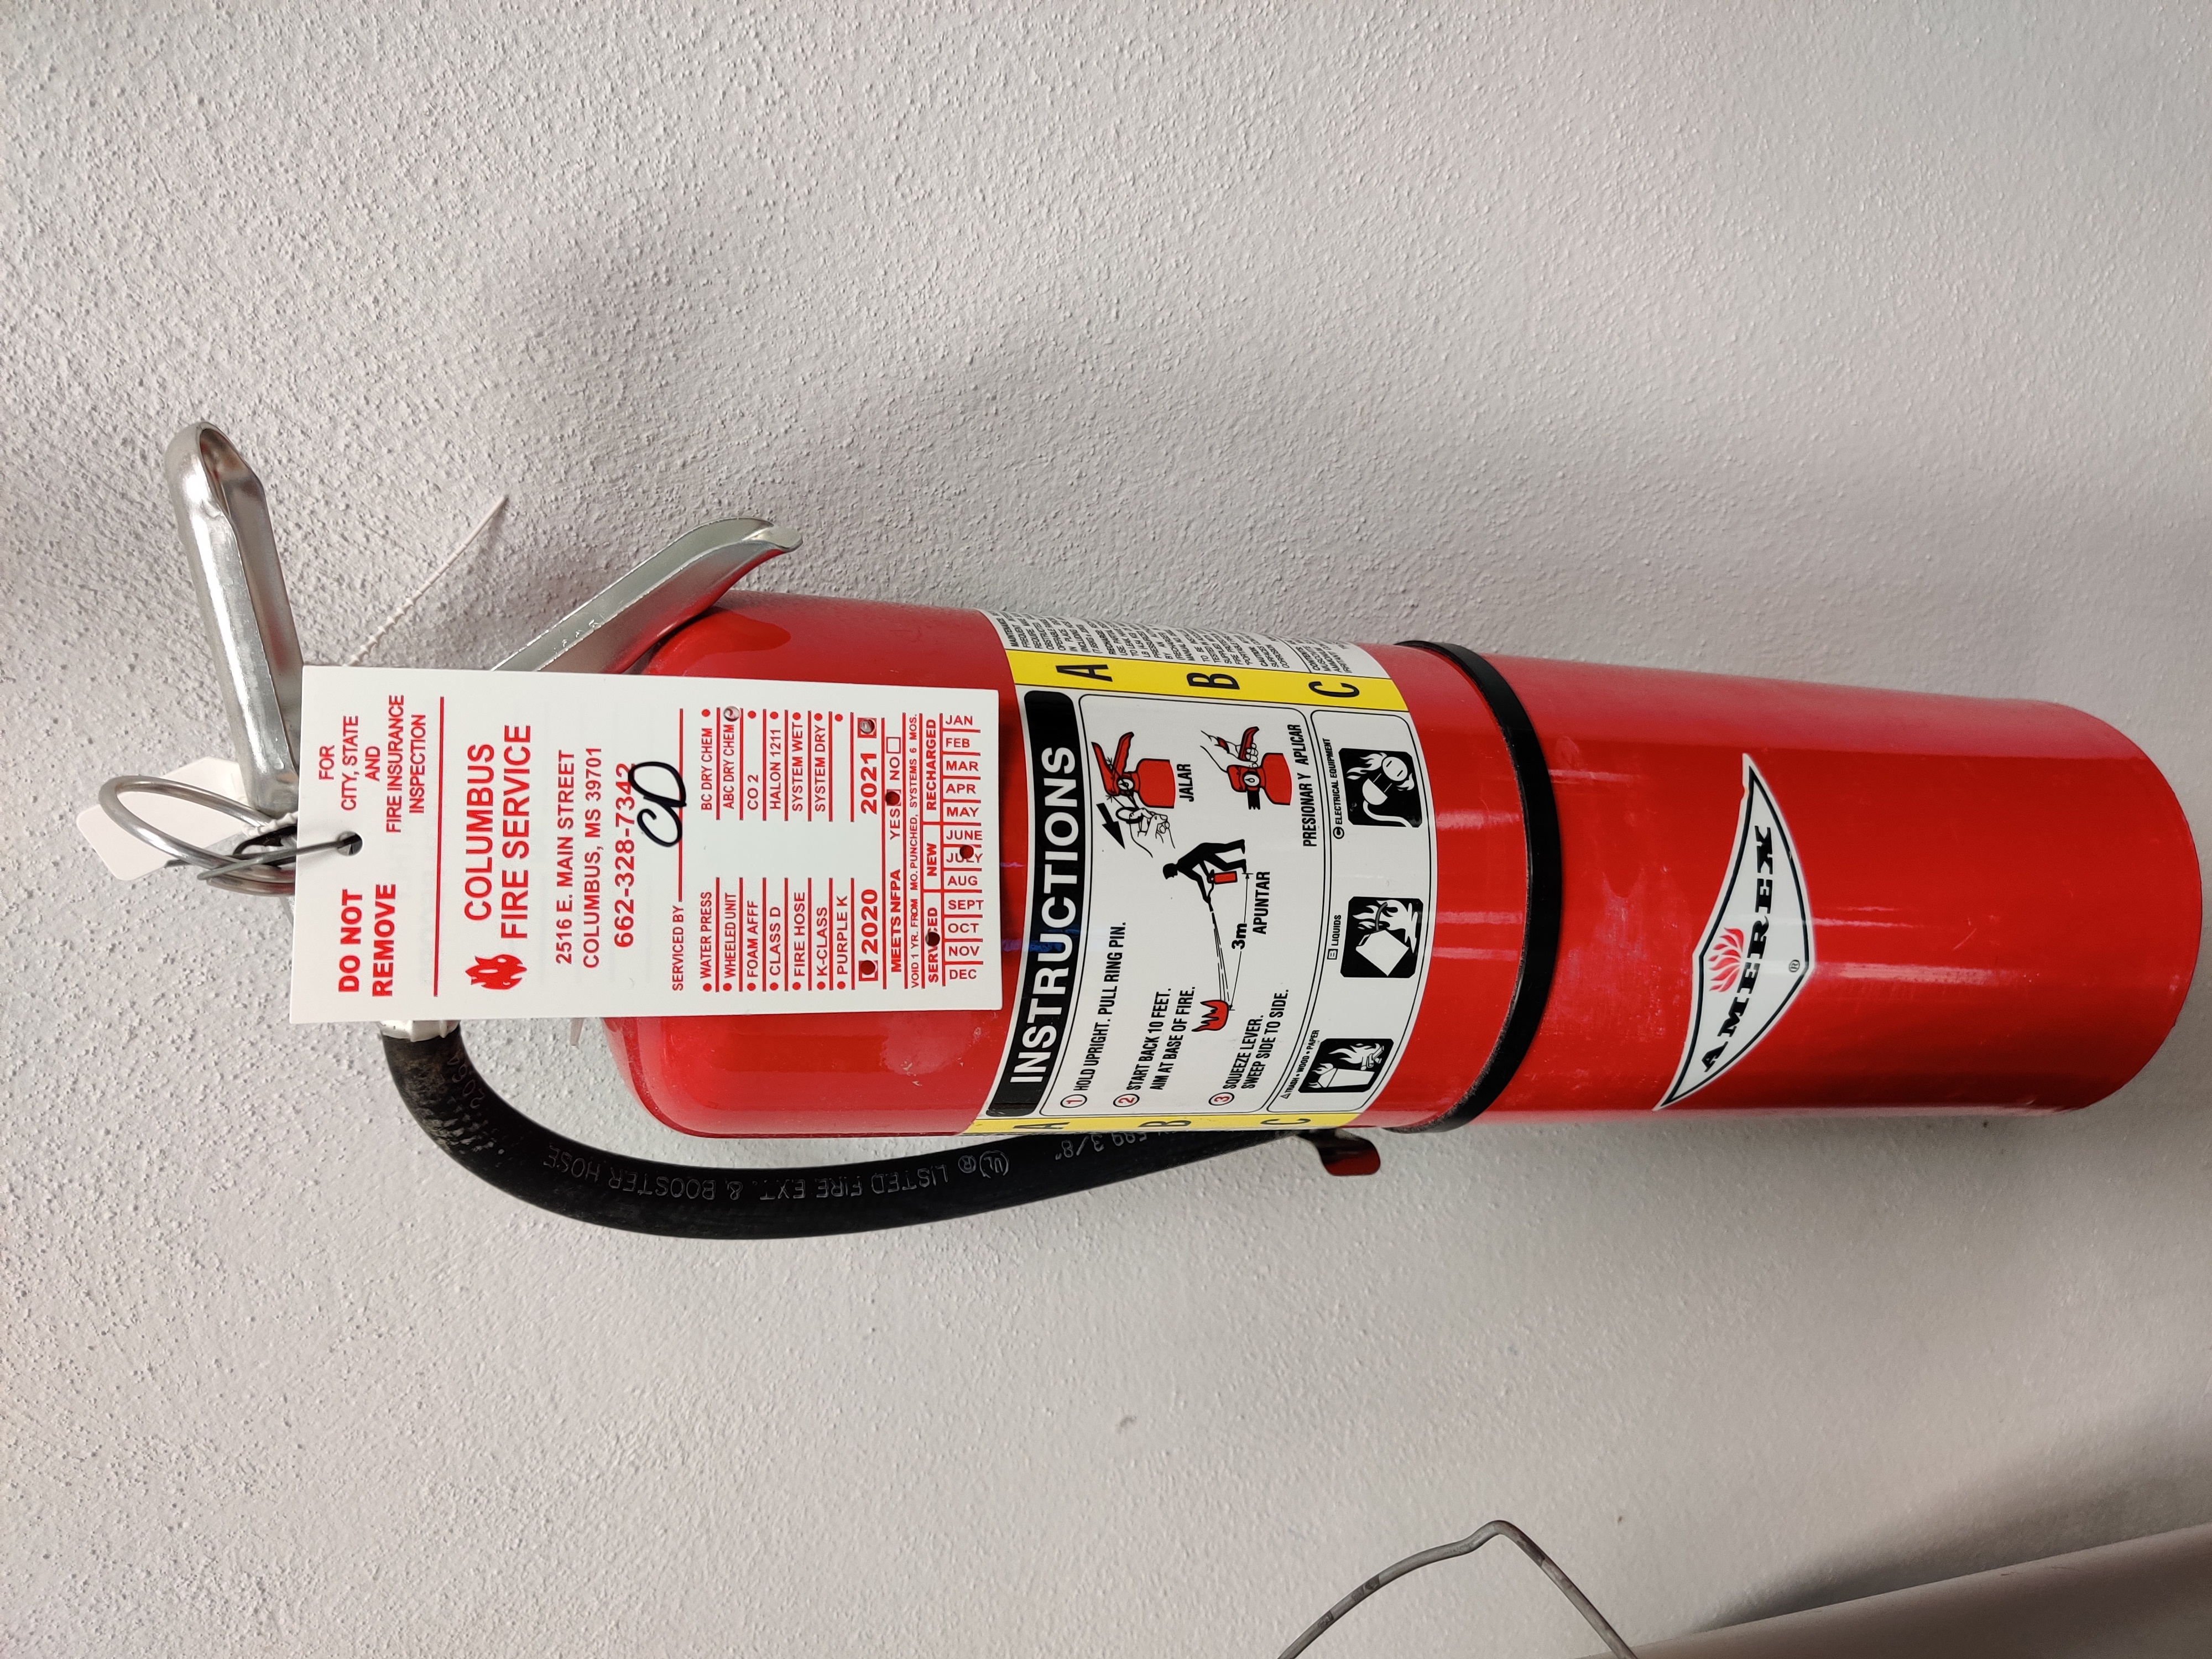 Lab fire extinguisher